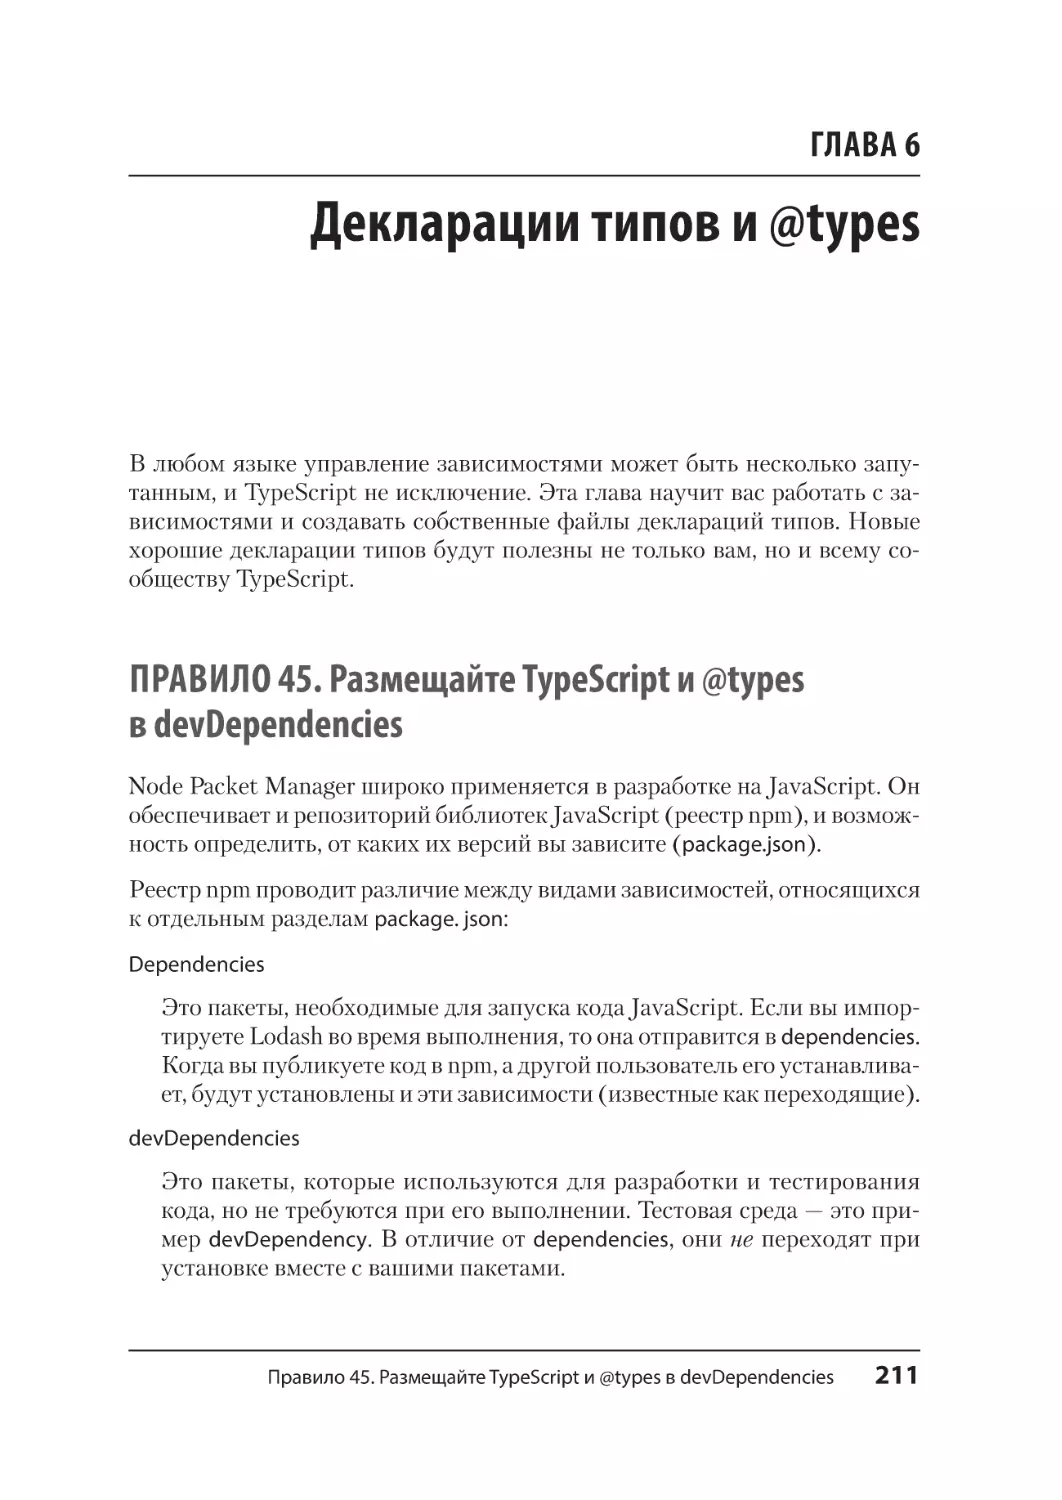 Глава 6. Декларации типов и @types
Правило 45. Размещайте TypeScript и @types в devDependencies